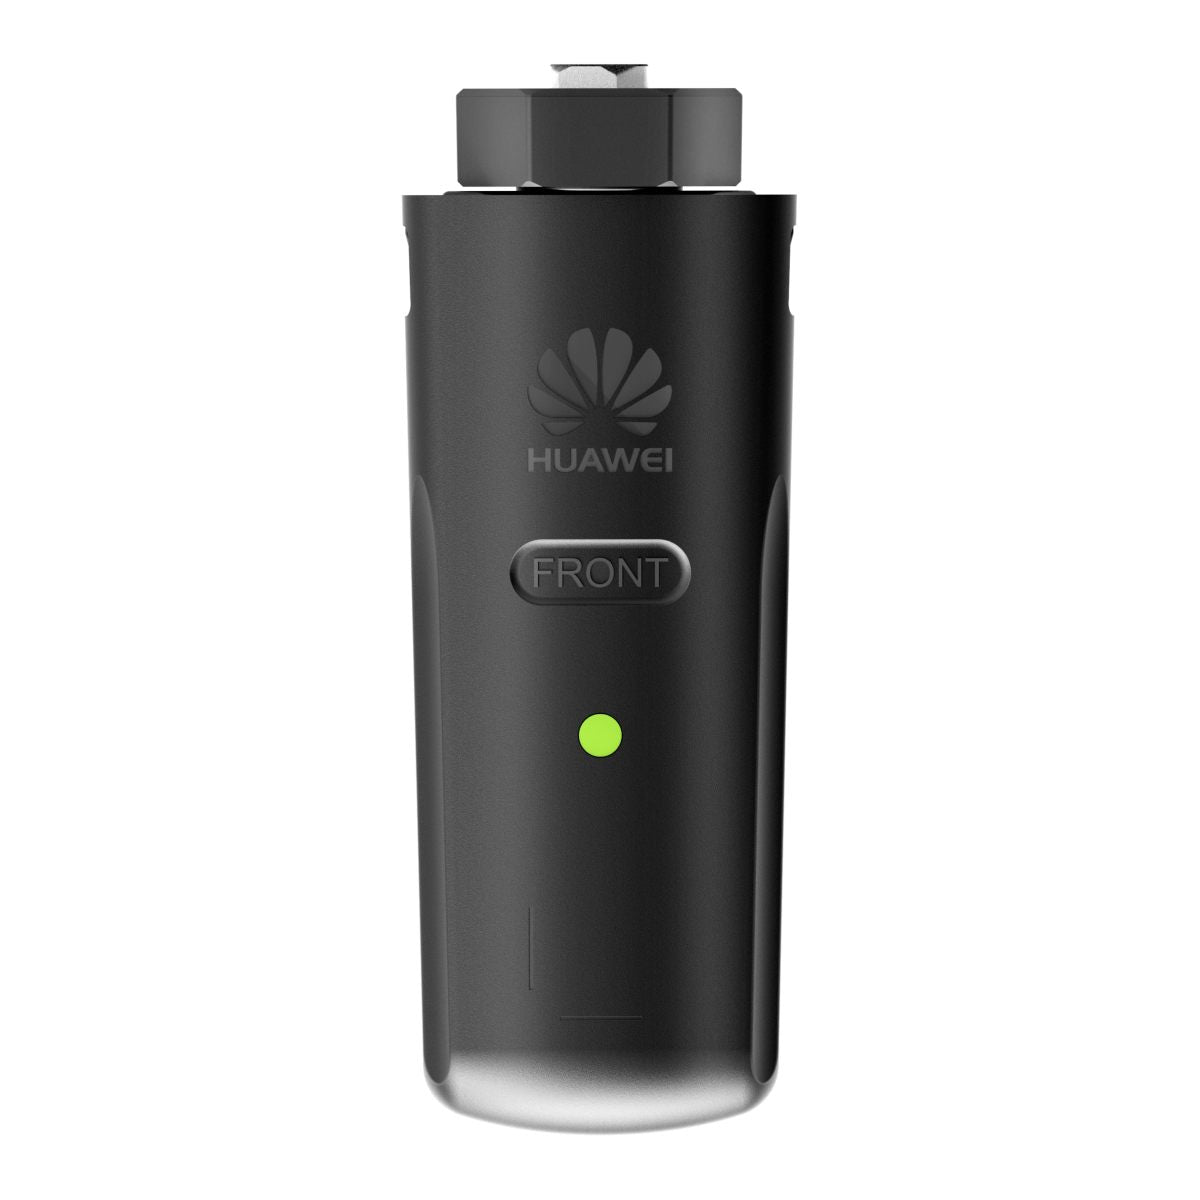 Huawei SDongleA-03-EU Smart WiFi Dongle 4G